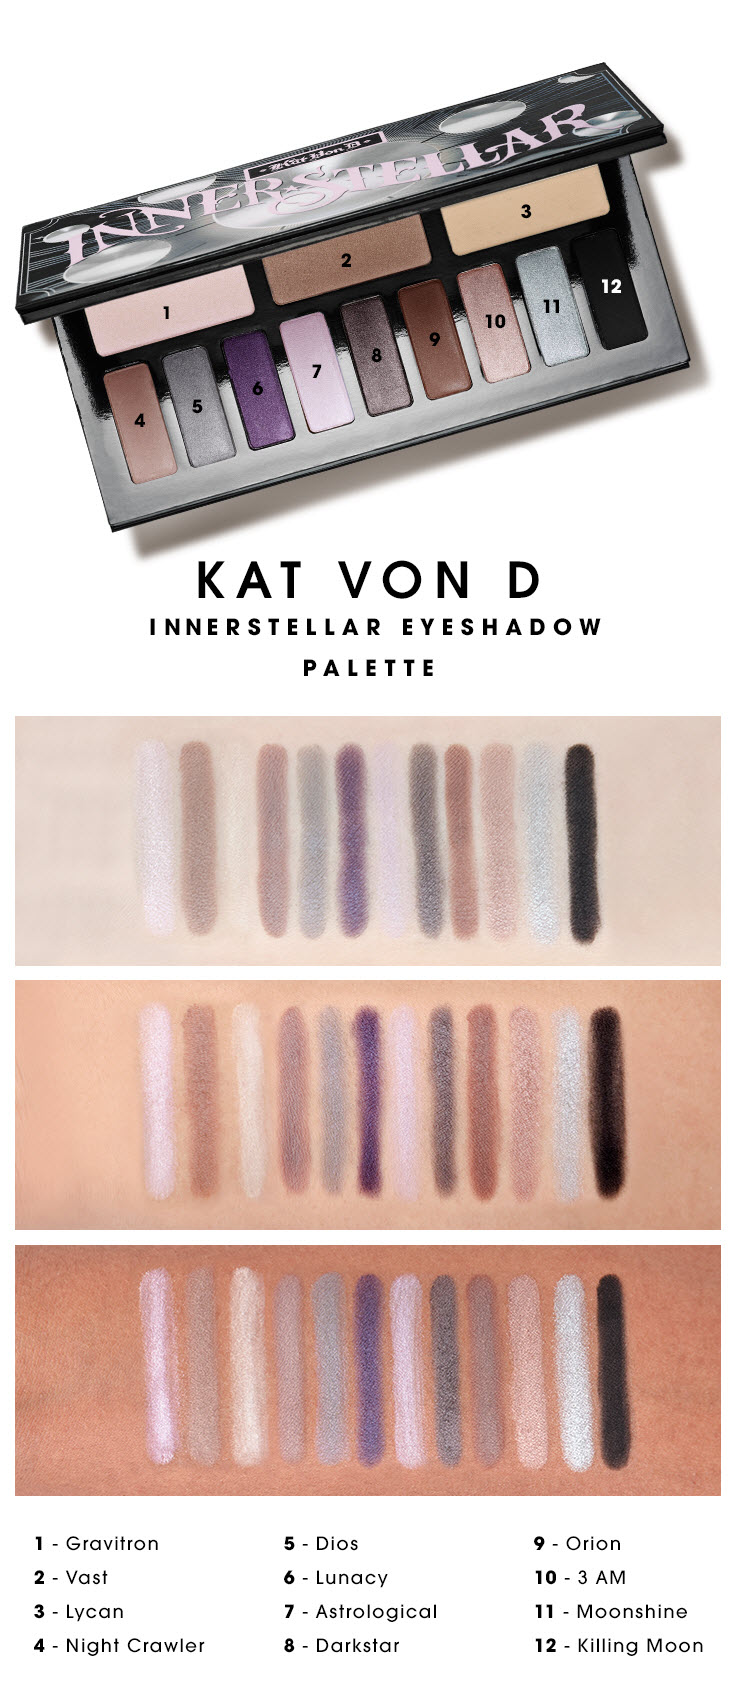 Kat Von D Innerstellar Eyeshadow Palette - Beauty Insider Community